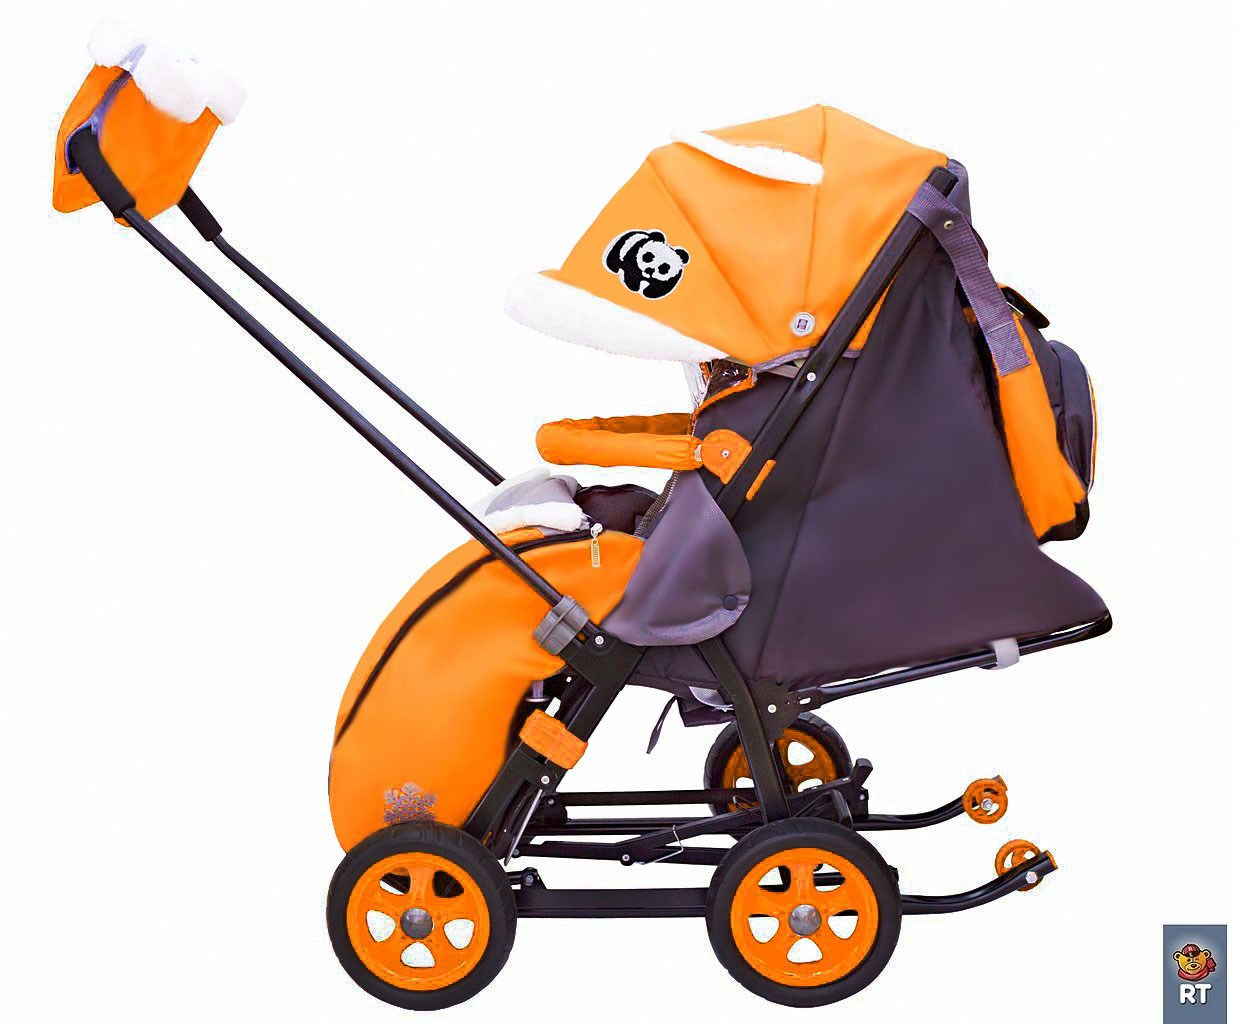 Санки-коляска Snow Galaxy City-1 - Панда на оранжевом, на больших колесах Eva, сумка, варежки  